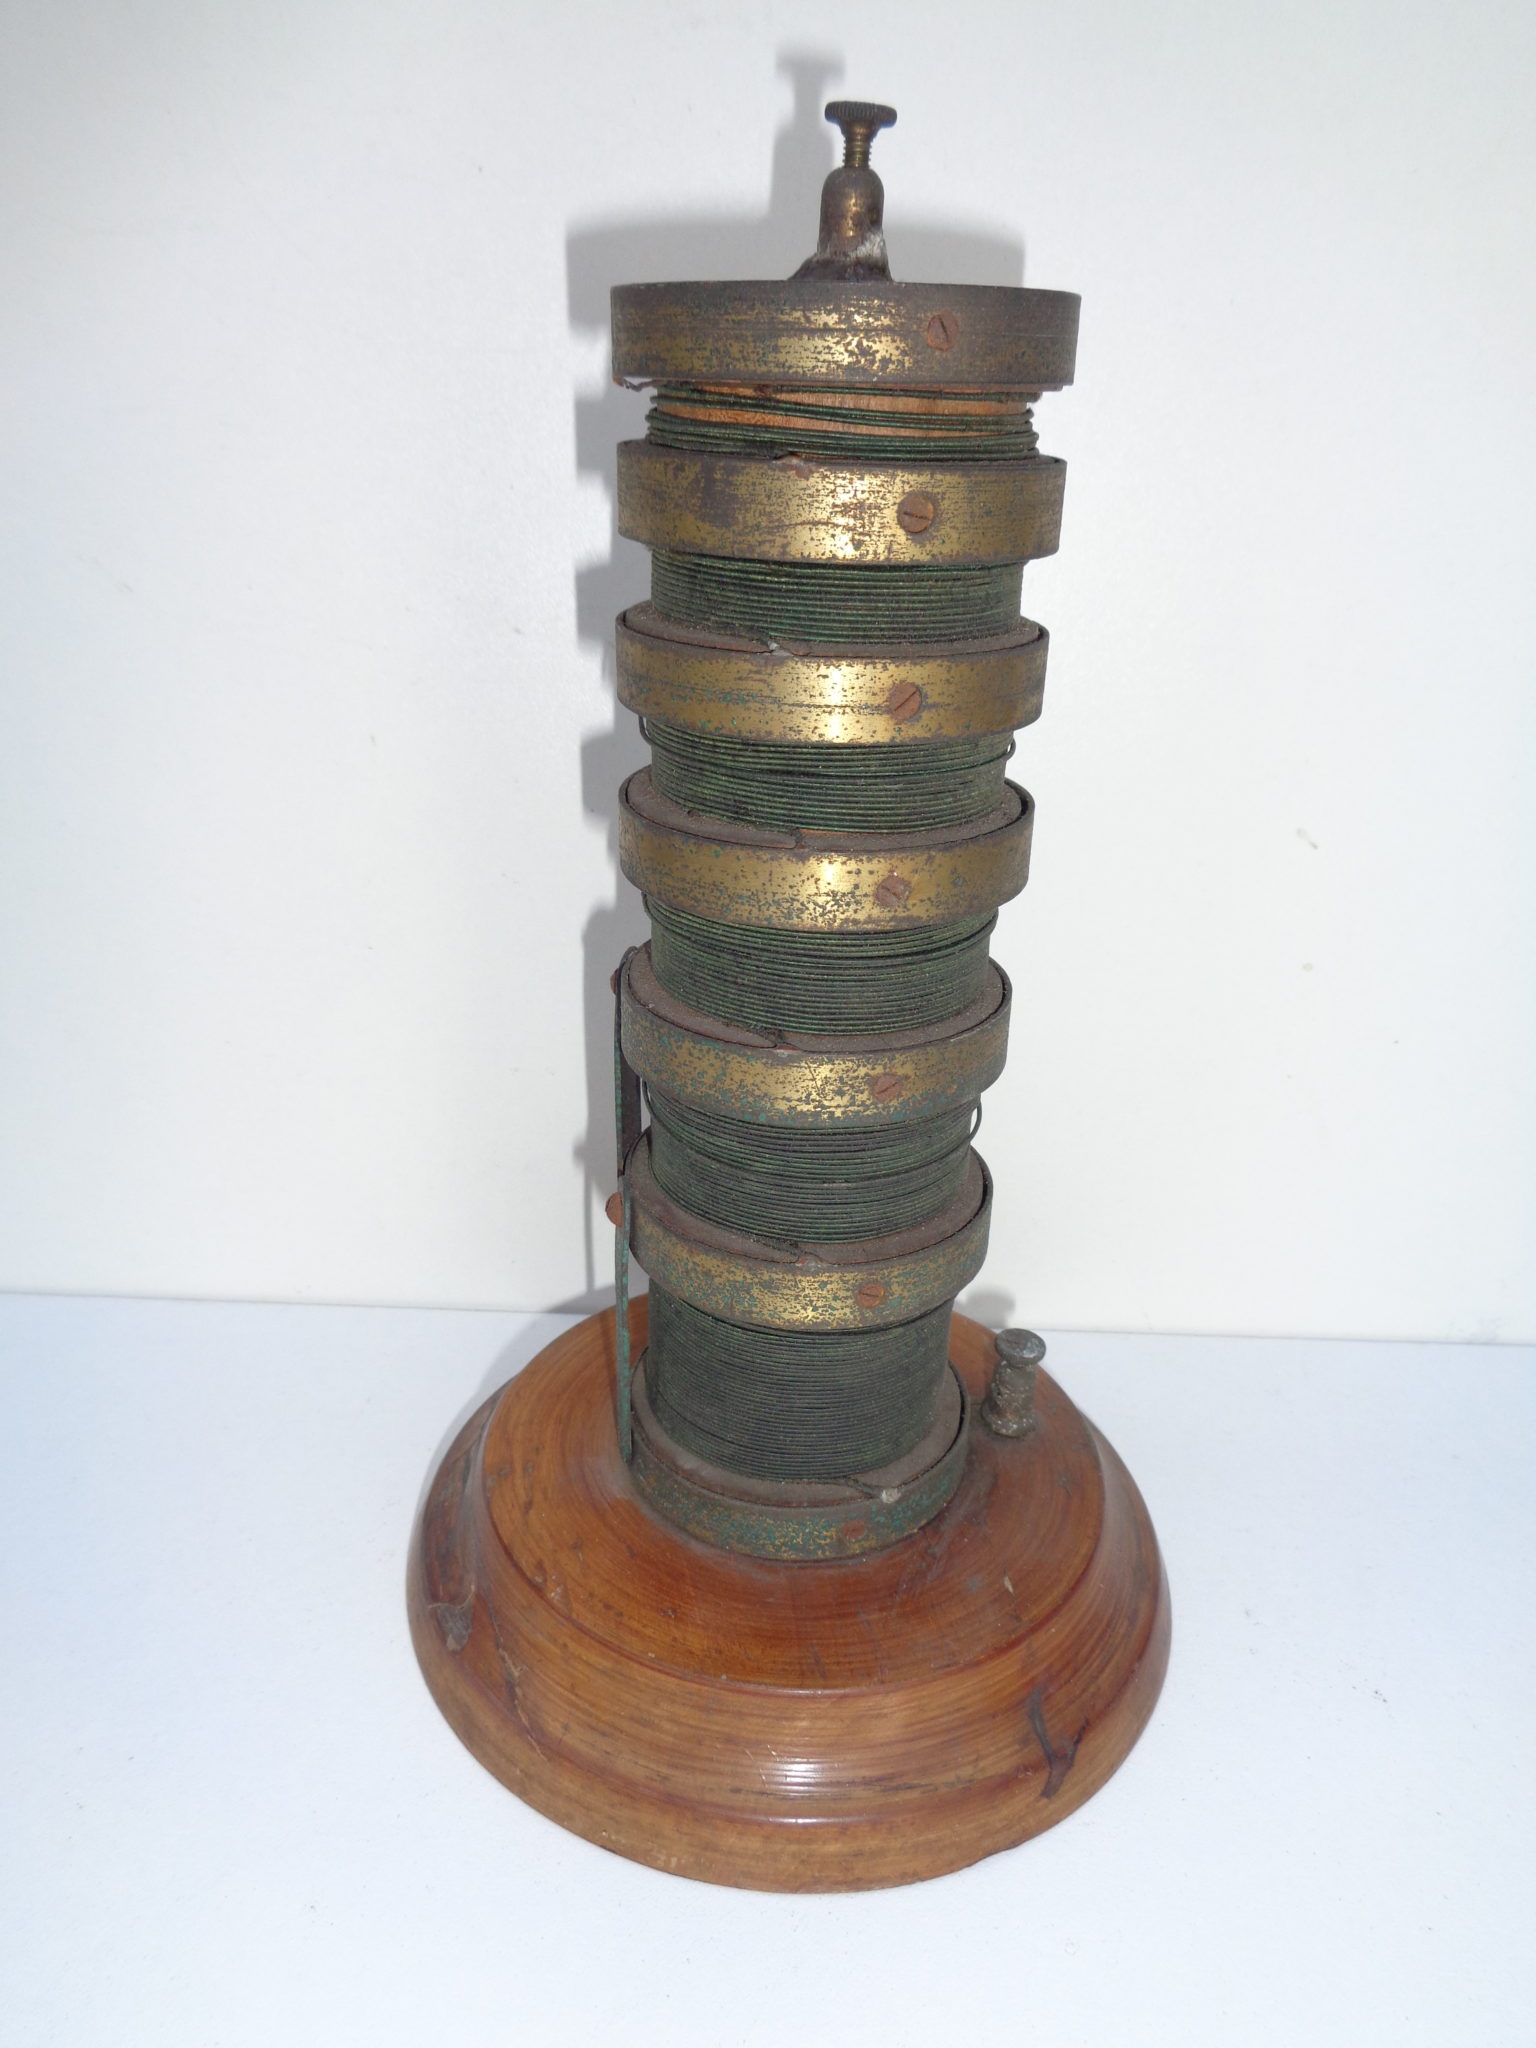 A rare old electric resistor column